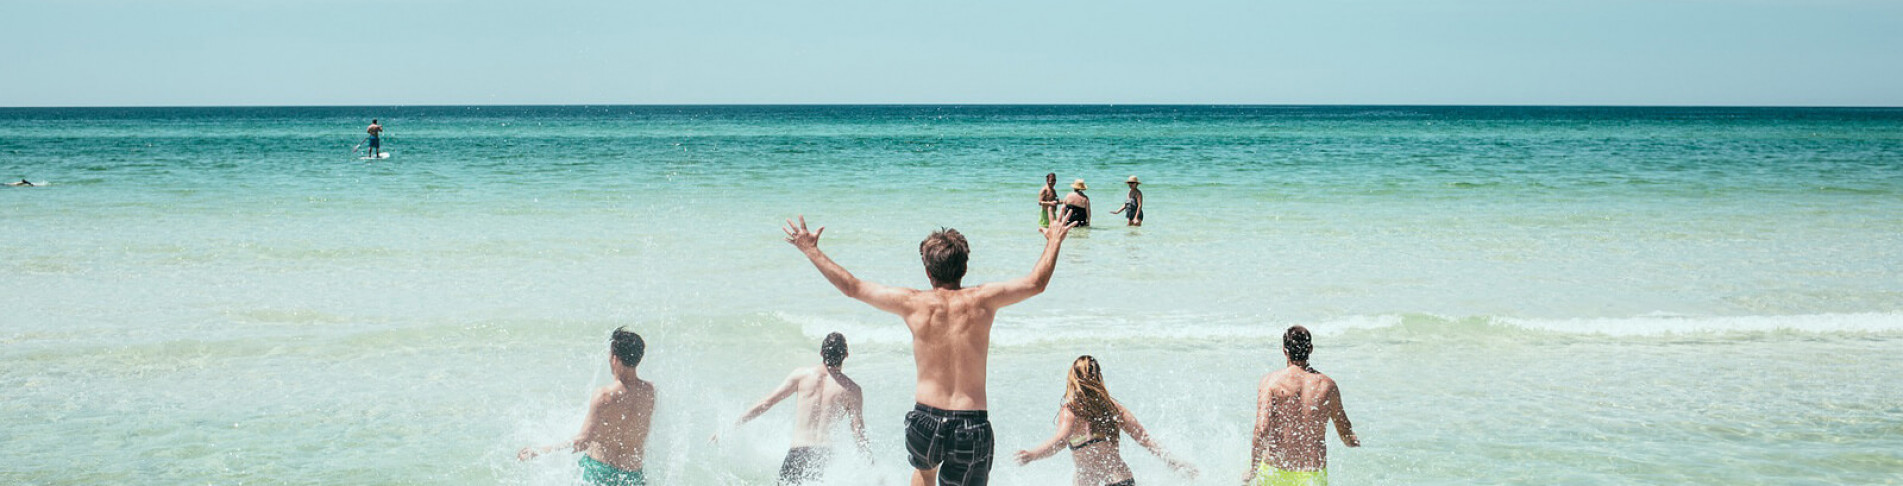 Junge Leute baden im Last Minute Türkei Urlaub im Meer